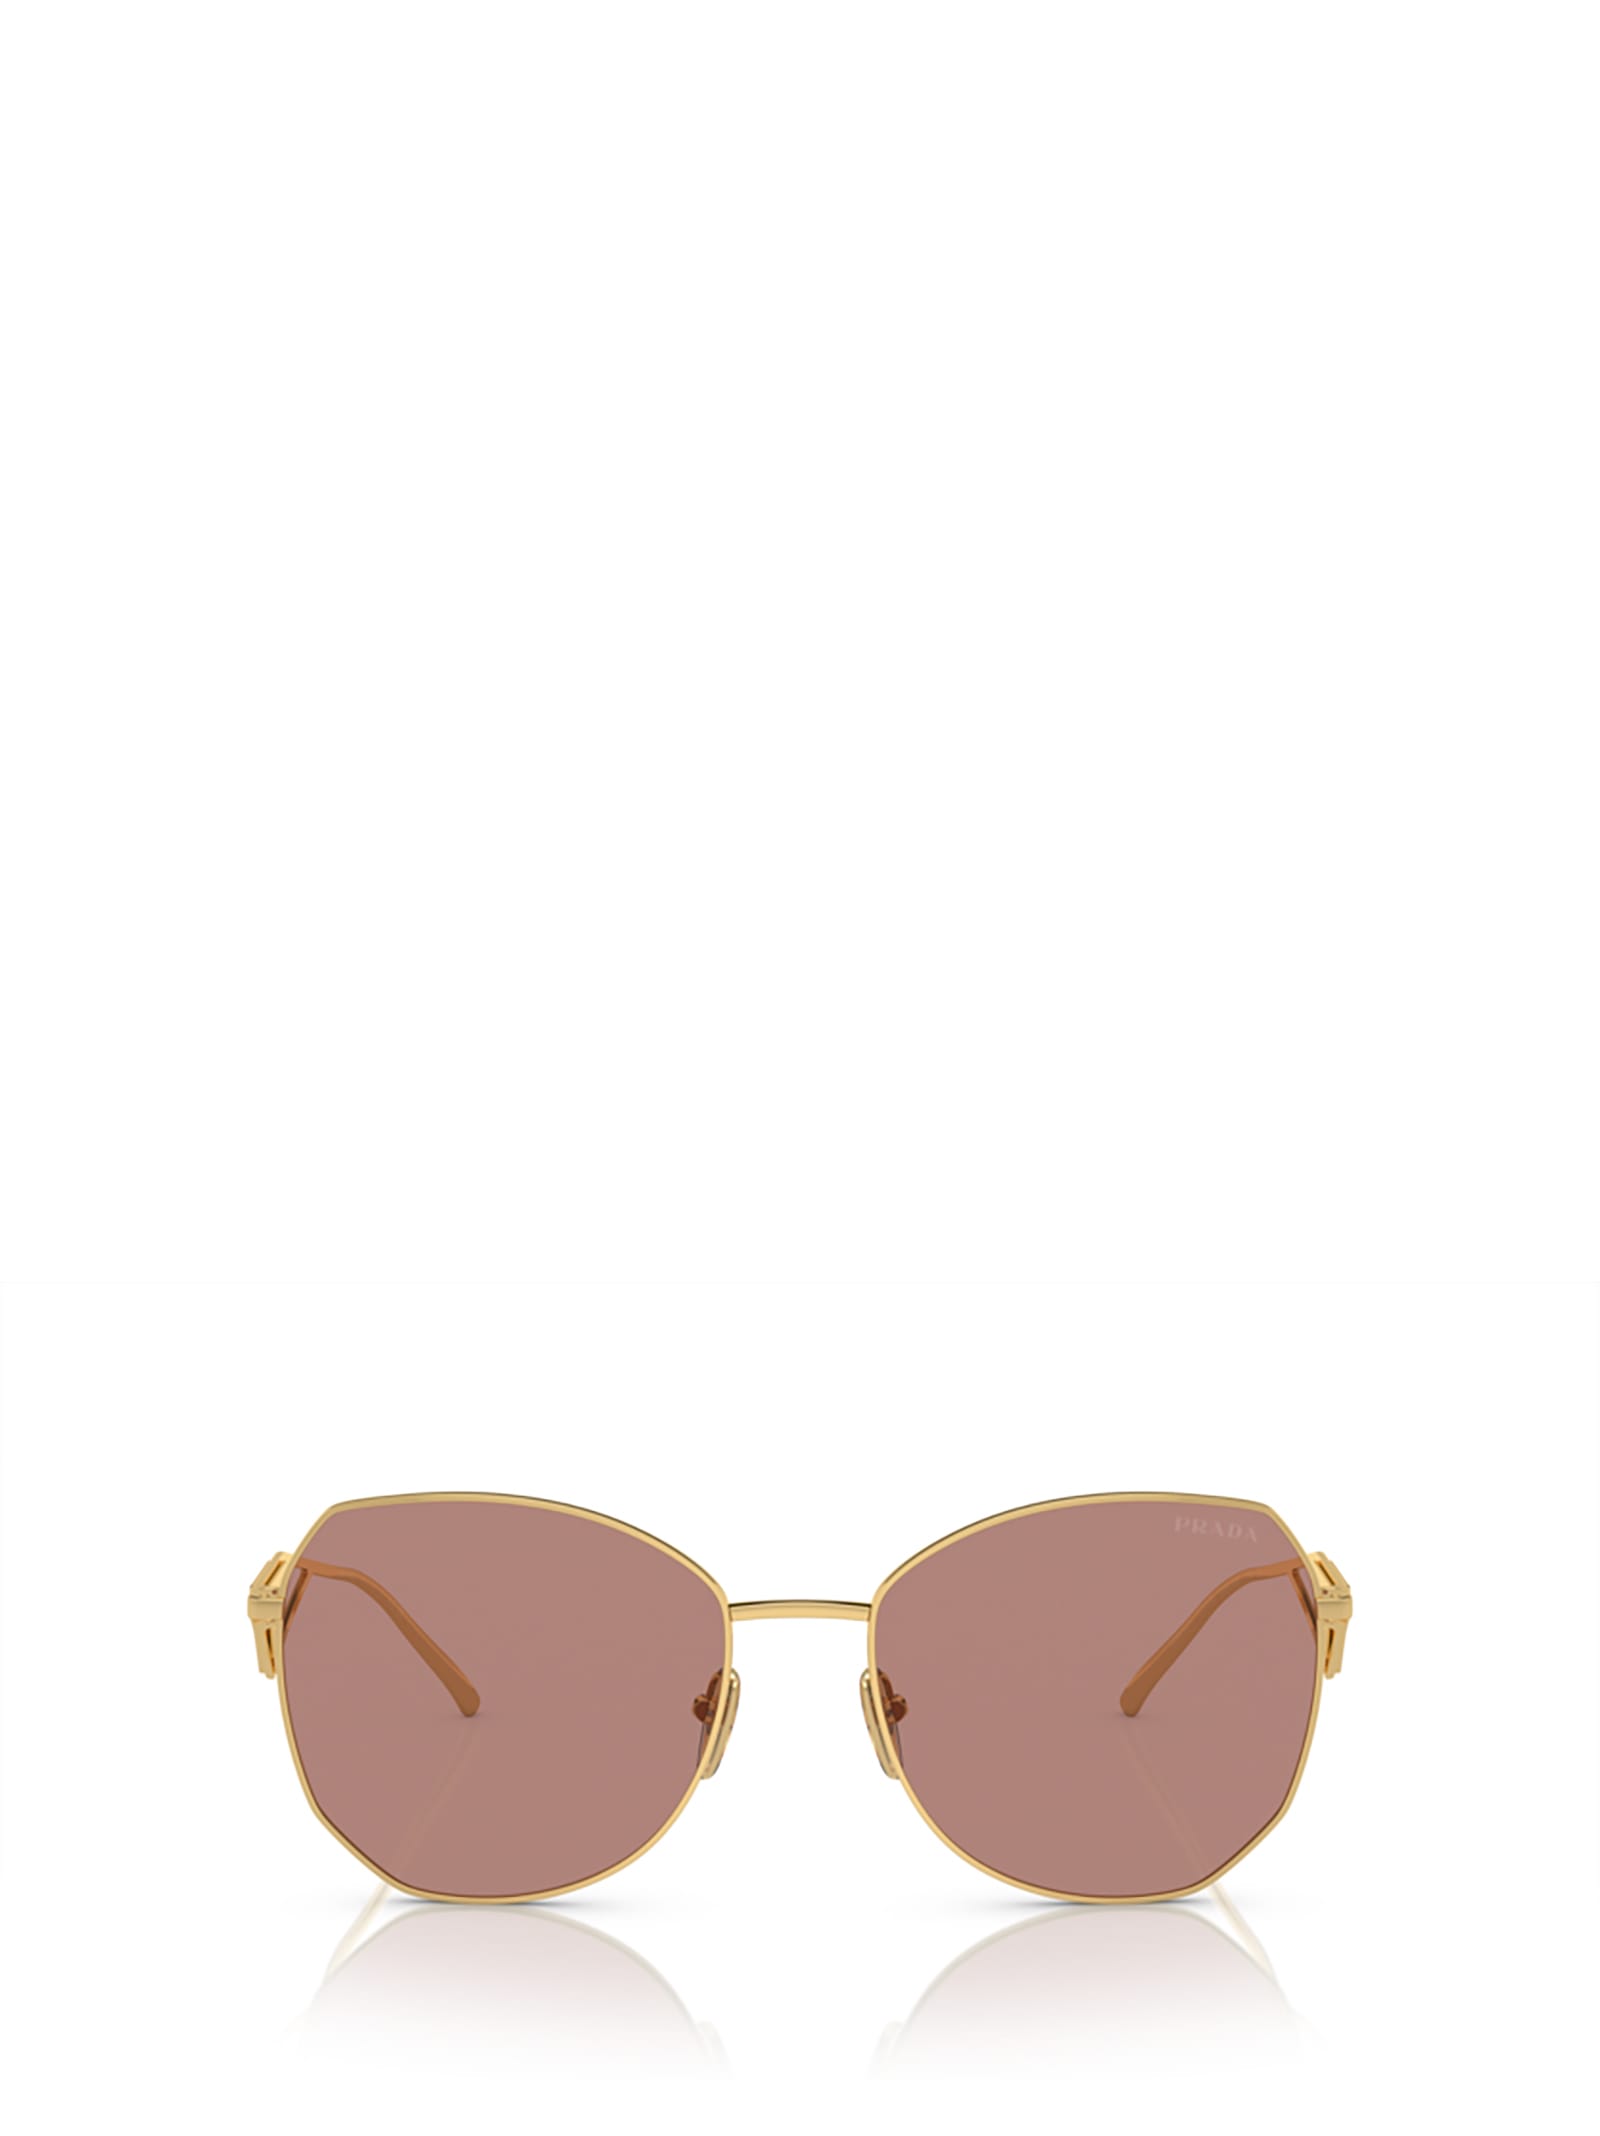 Prada Pr 57ys Gold Sunglasses